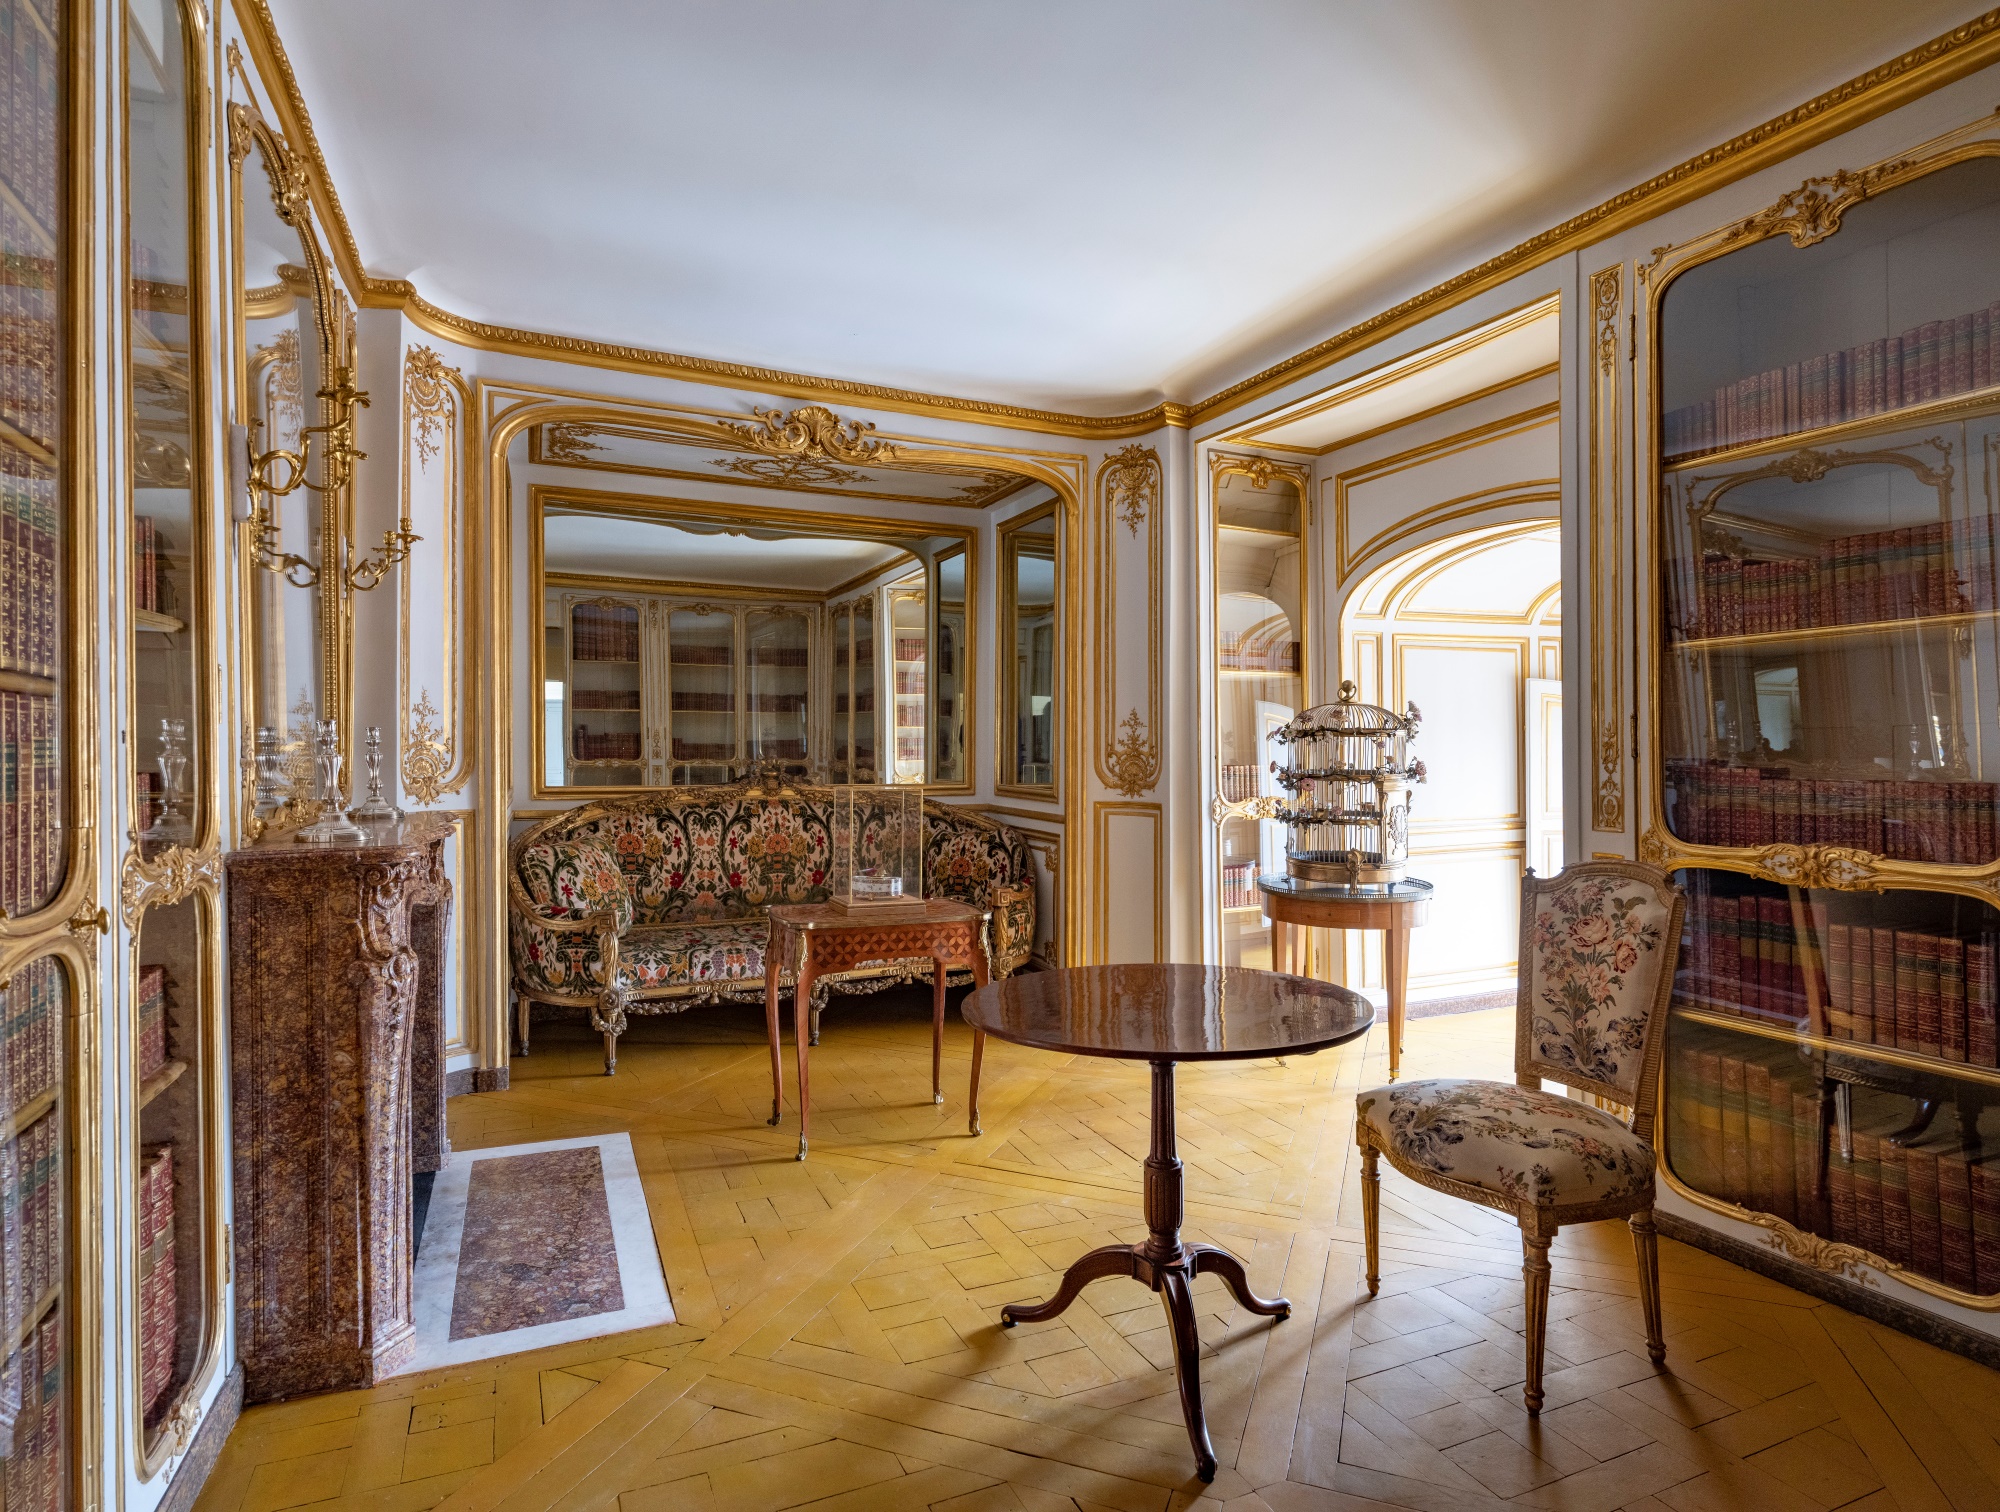 Bibliothèque de l'appartement de Madame Du Barry restaurée et remeublée à Versailles en 2022. Photo service de presse. © Château de Versailles / T. Garnier